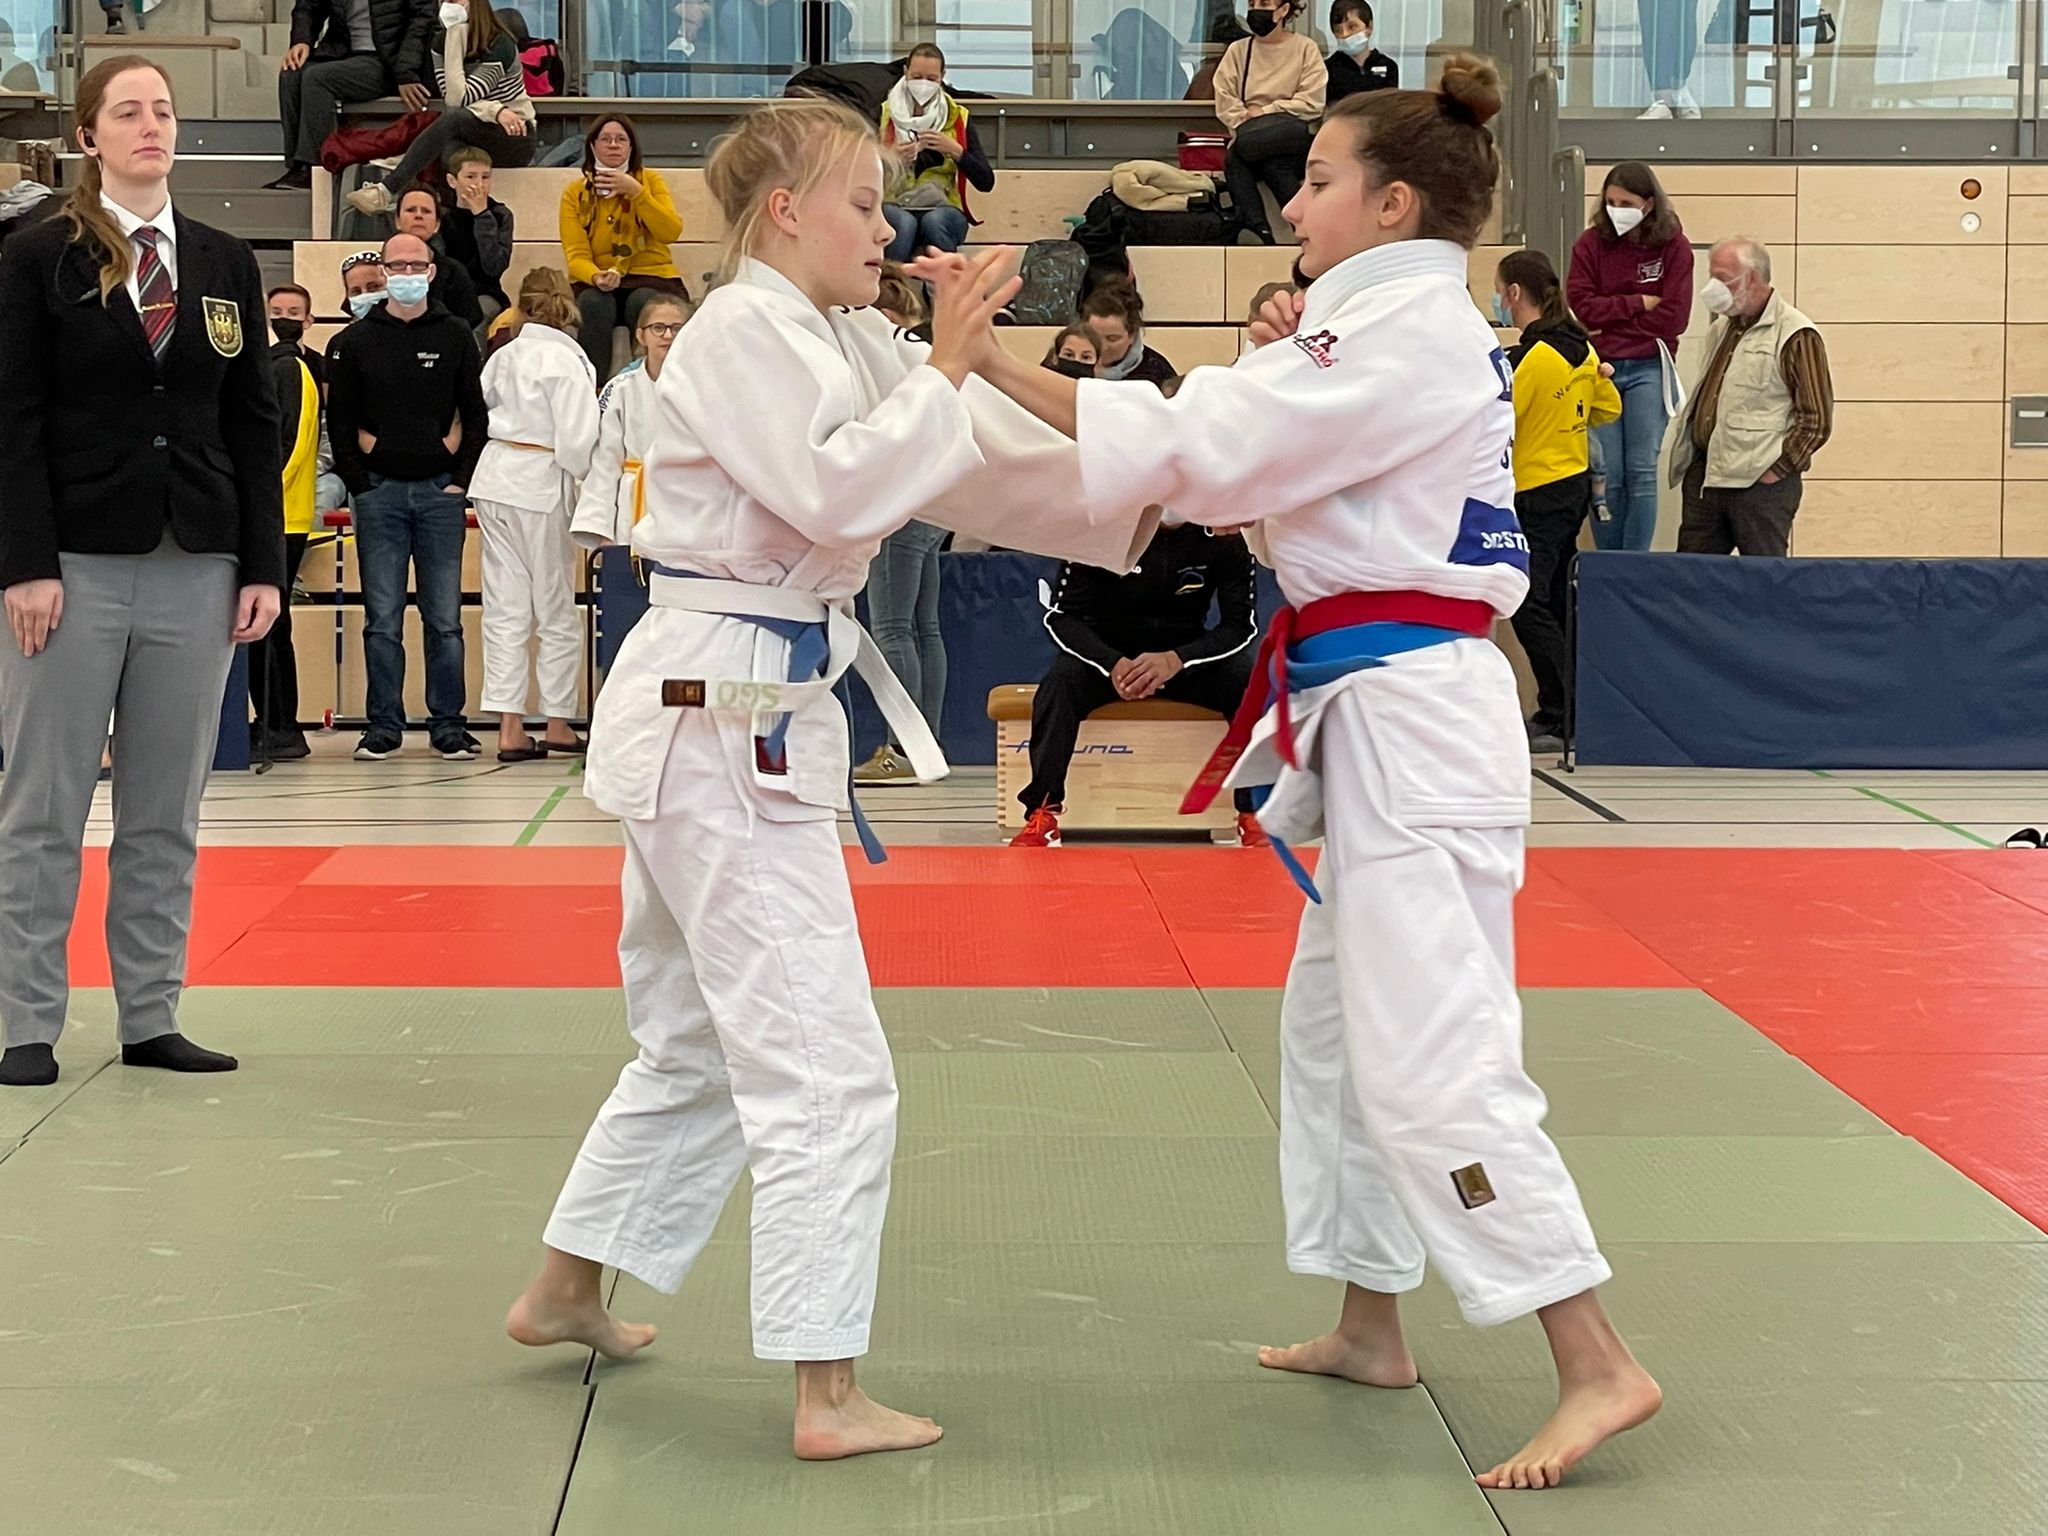 Judoka weihen neue Sporthalle ein | JSV Lippstadt e.V. richtet Landesmeisterschaften U15 aus